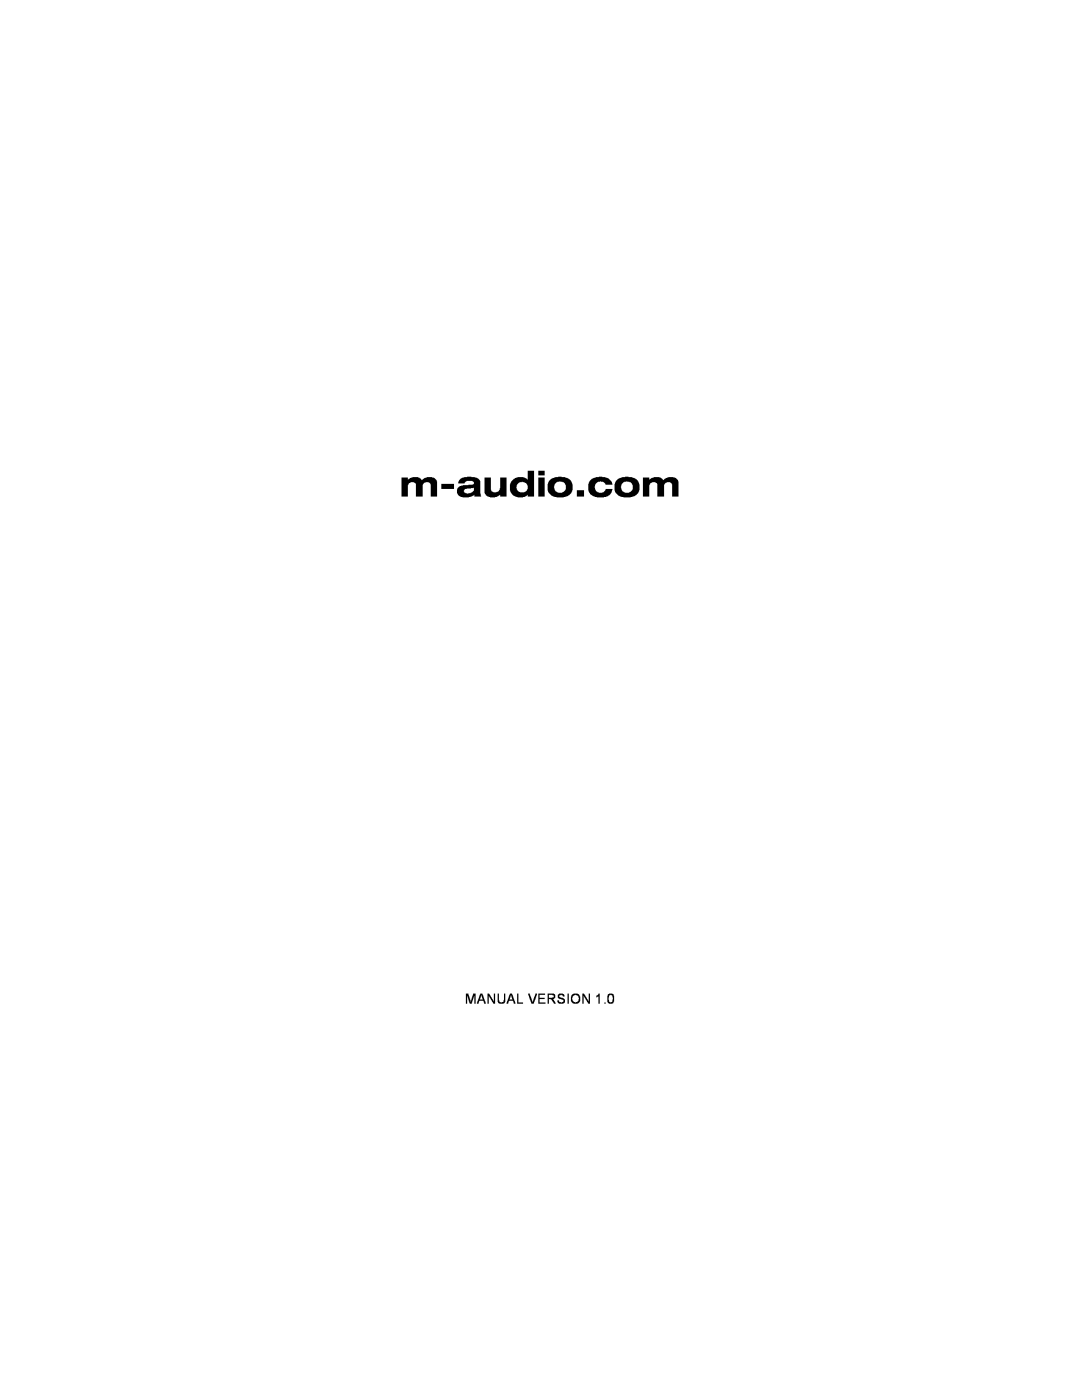 M-Audio AV 40 manual Manual Version 